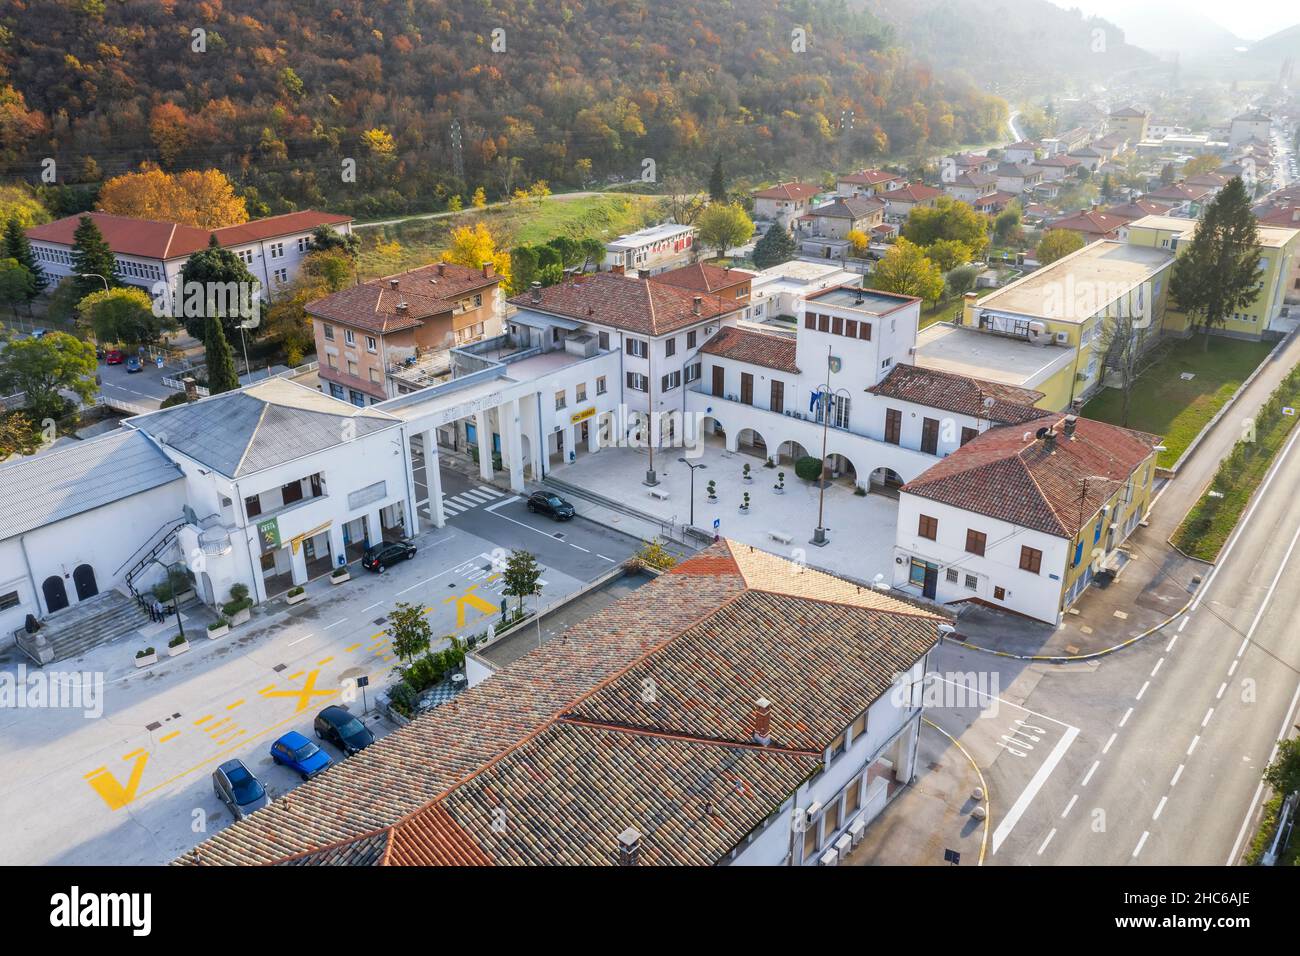 RASA, CROATIA - NOVEMBER 13, 2021 - An aerial view of Rasa, city square, Istria, Croatia Stock Photo